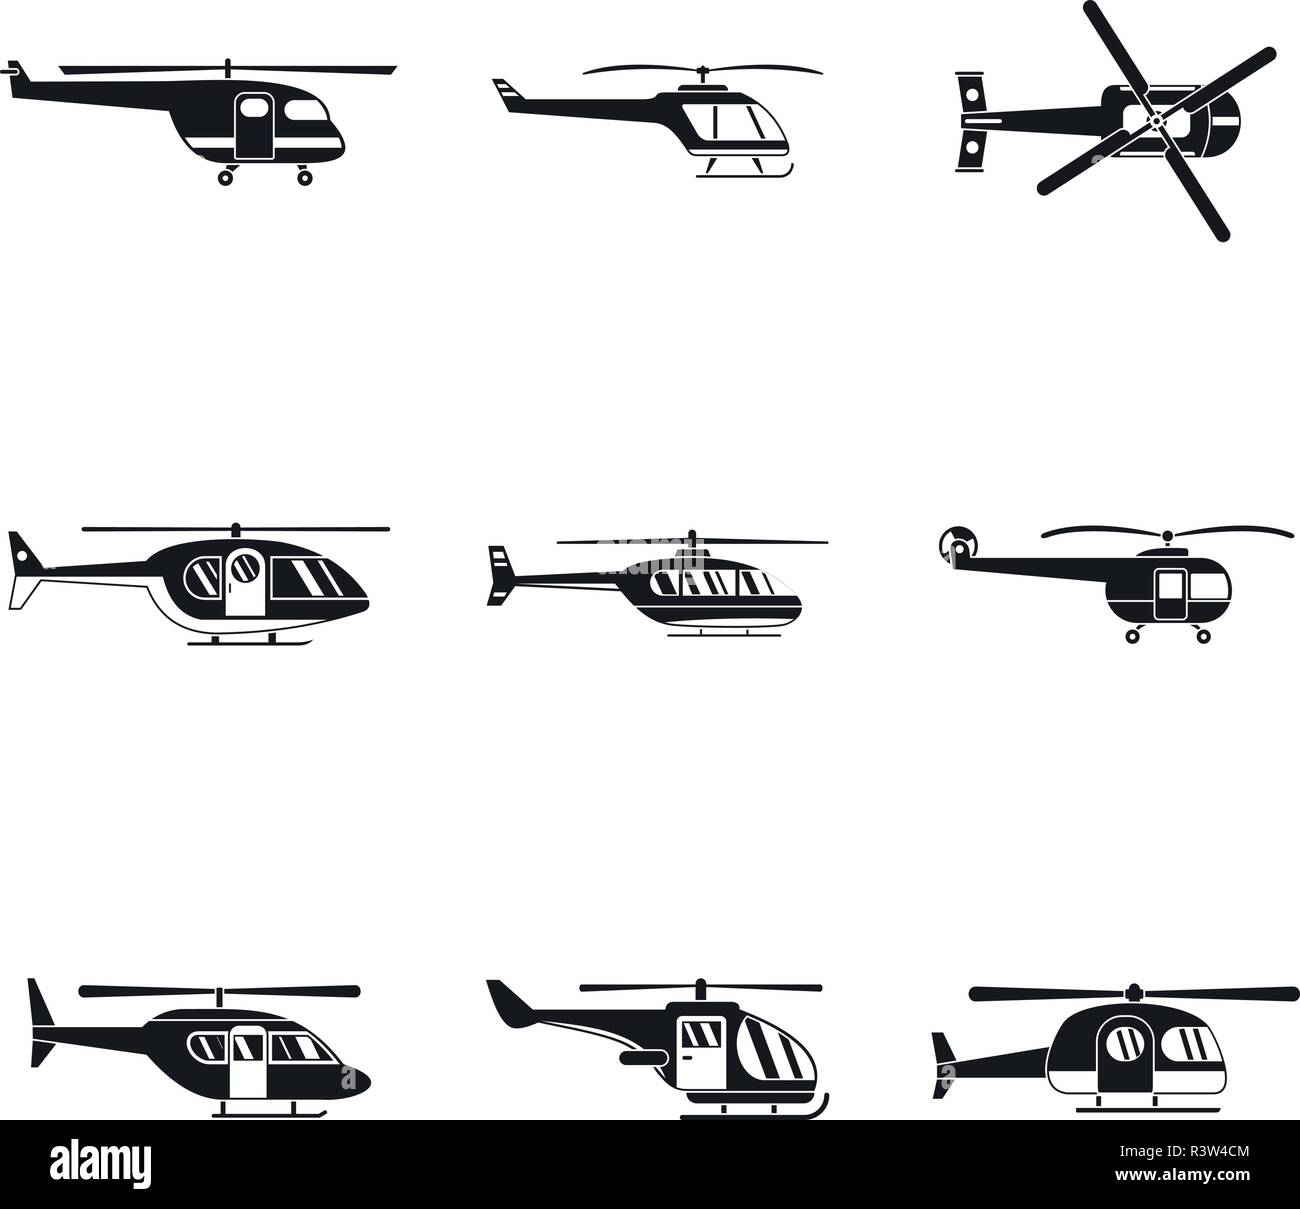 Avions militaires hélicoptères icons set du broyeur. Illustration simple de 9 avions militaires hélicoptères vector icons du broyeur pour le web Illustration de Vecteur